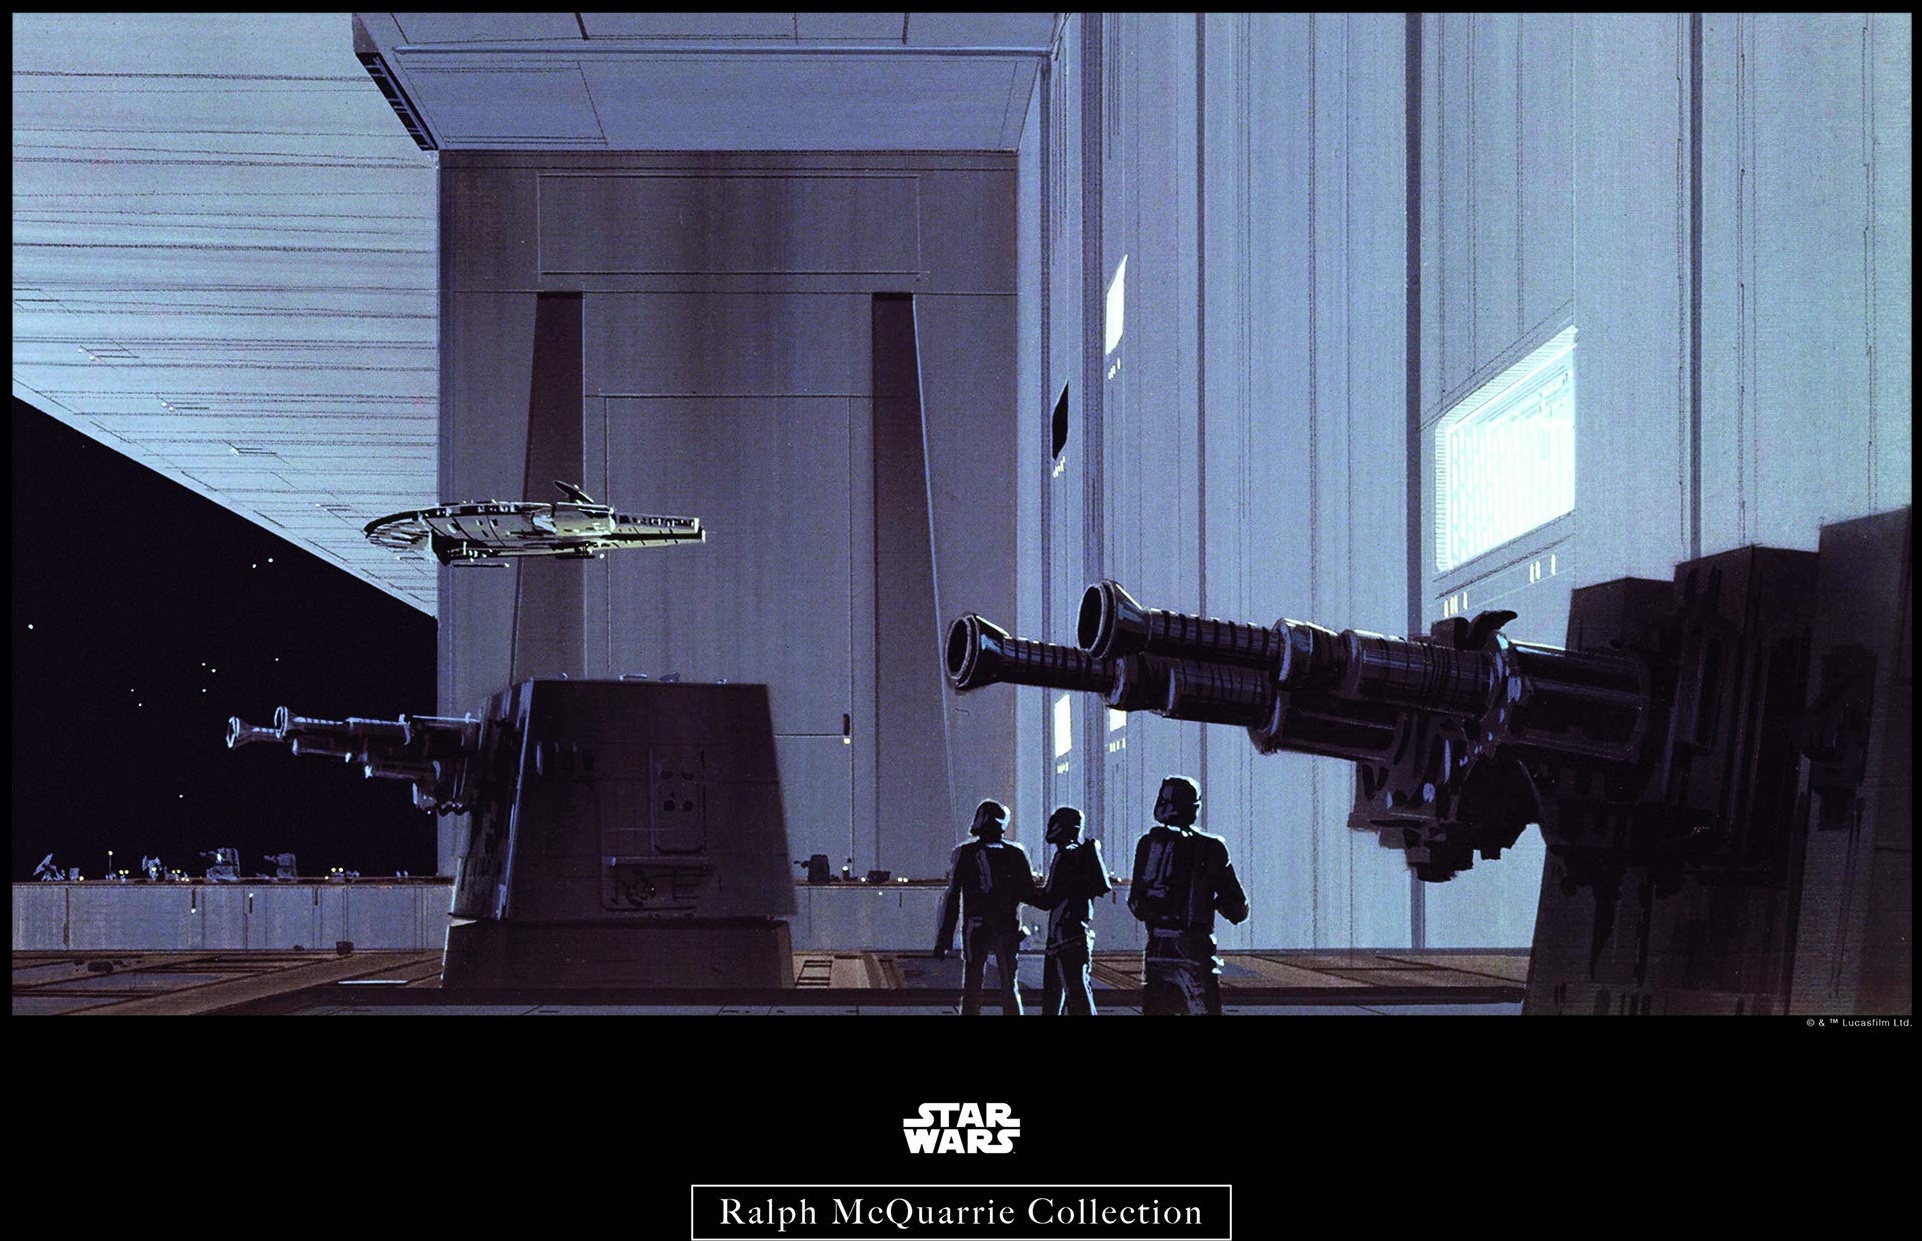 Komar Wandbild | Star Wars Classic RMQ Death Star Hangar | Kinderzimmer, Jugendzimmer, Dekoration, Kunstdruck | ohne Rahmen | WB131-50x40 | Größe: 50 x 40 cm (Breite x Höhe)